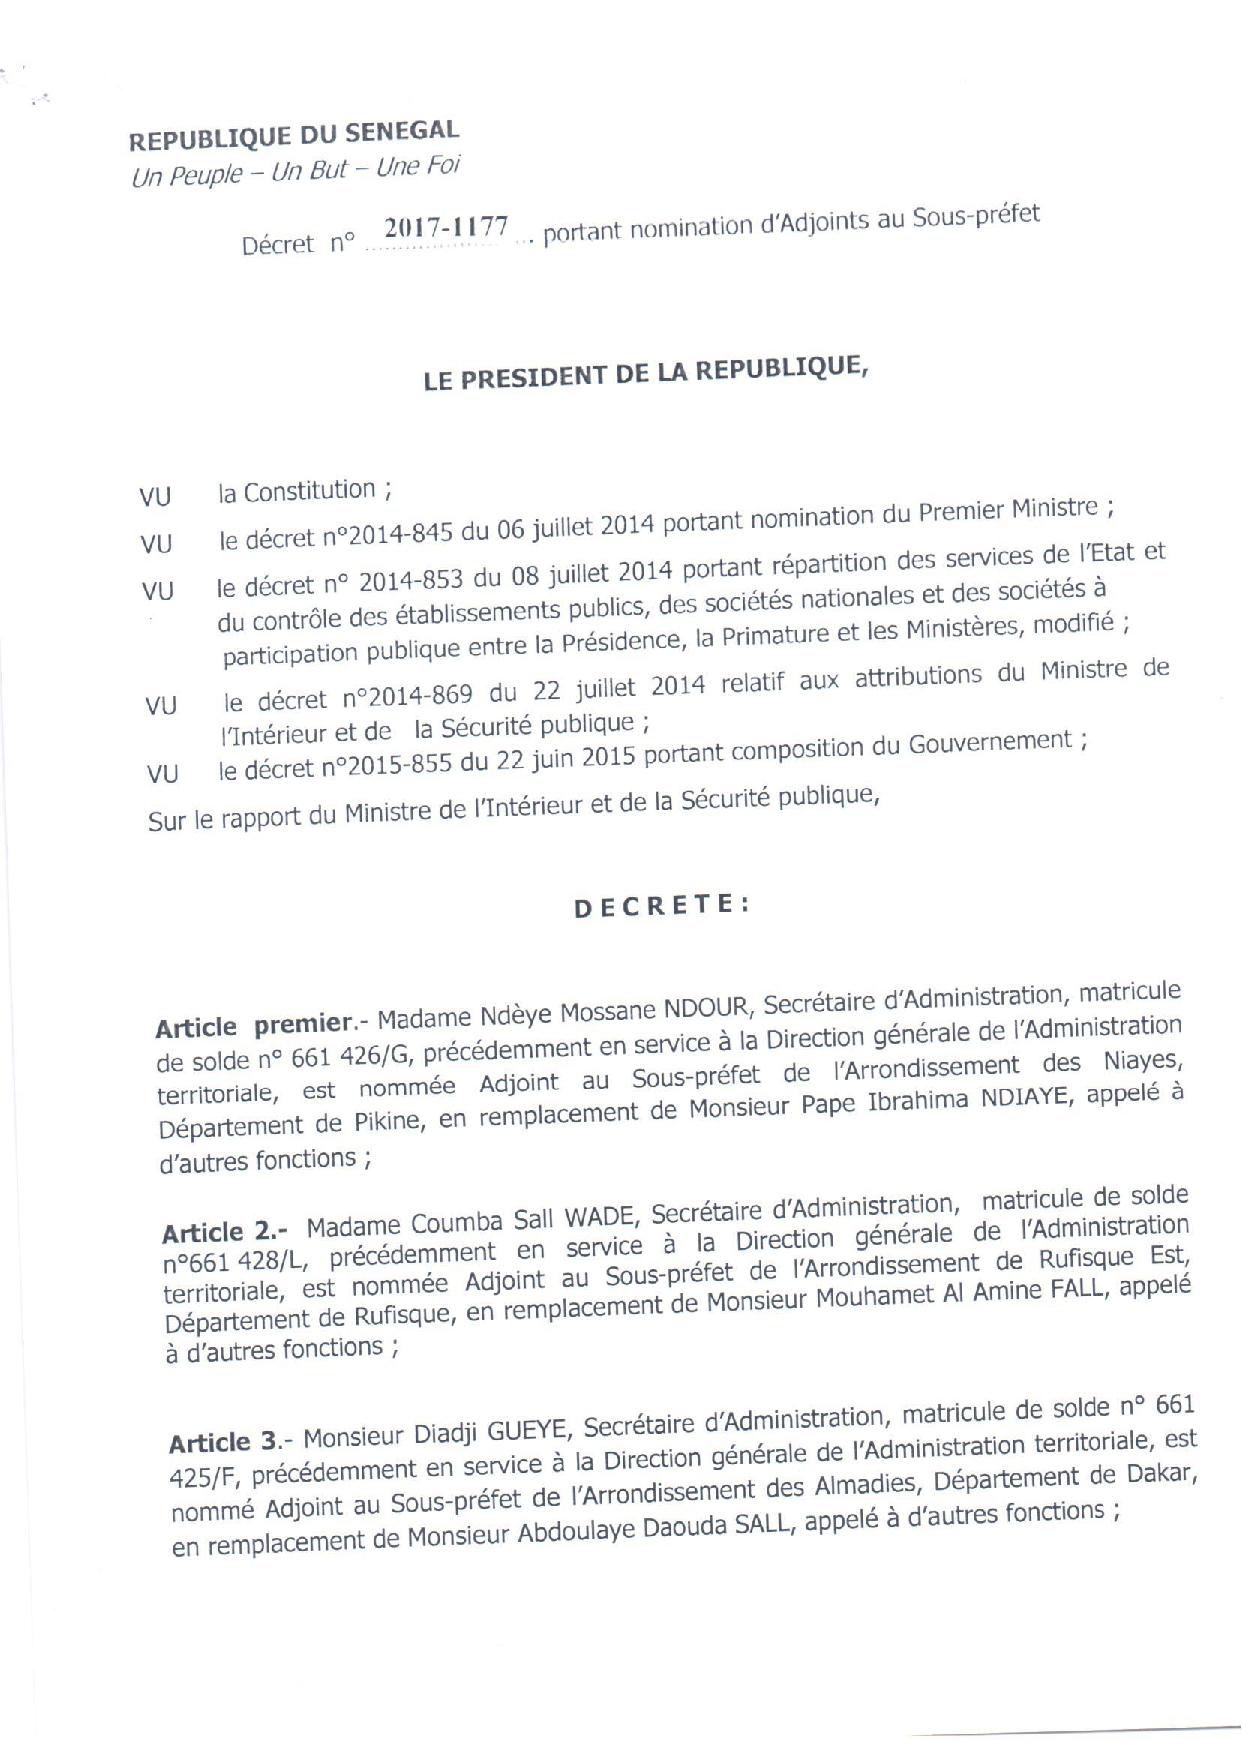 Décret 2017-1117 portant nomination Adjoints au Sous-préfets